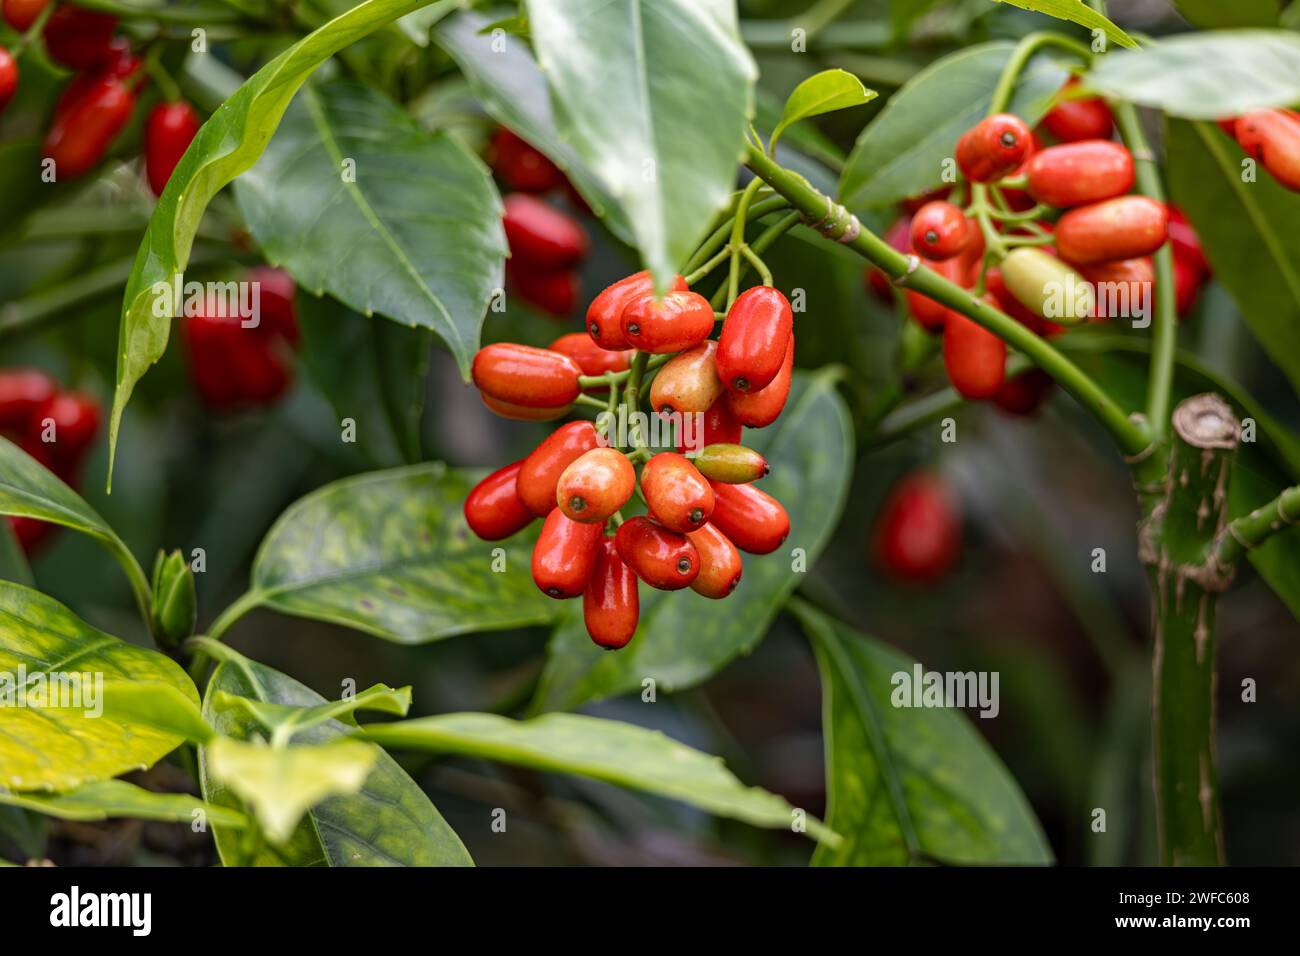 Una planta con múltiples frutos rojos colgando de sus ramas Foto de stock